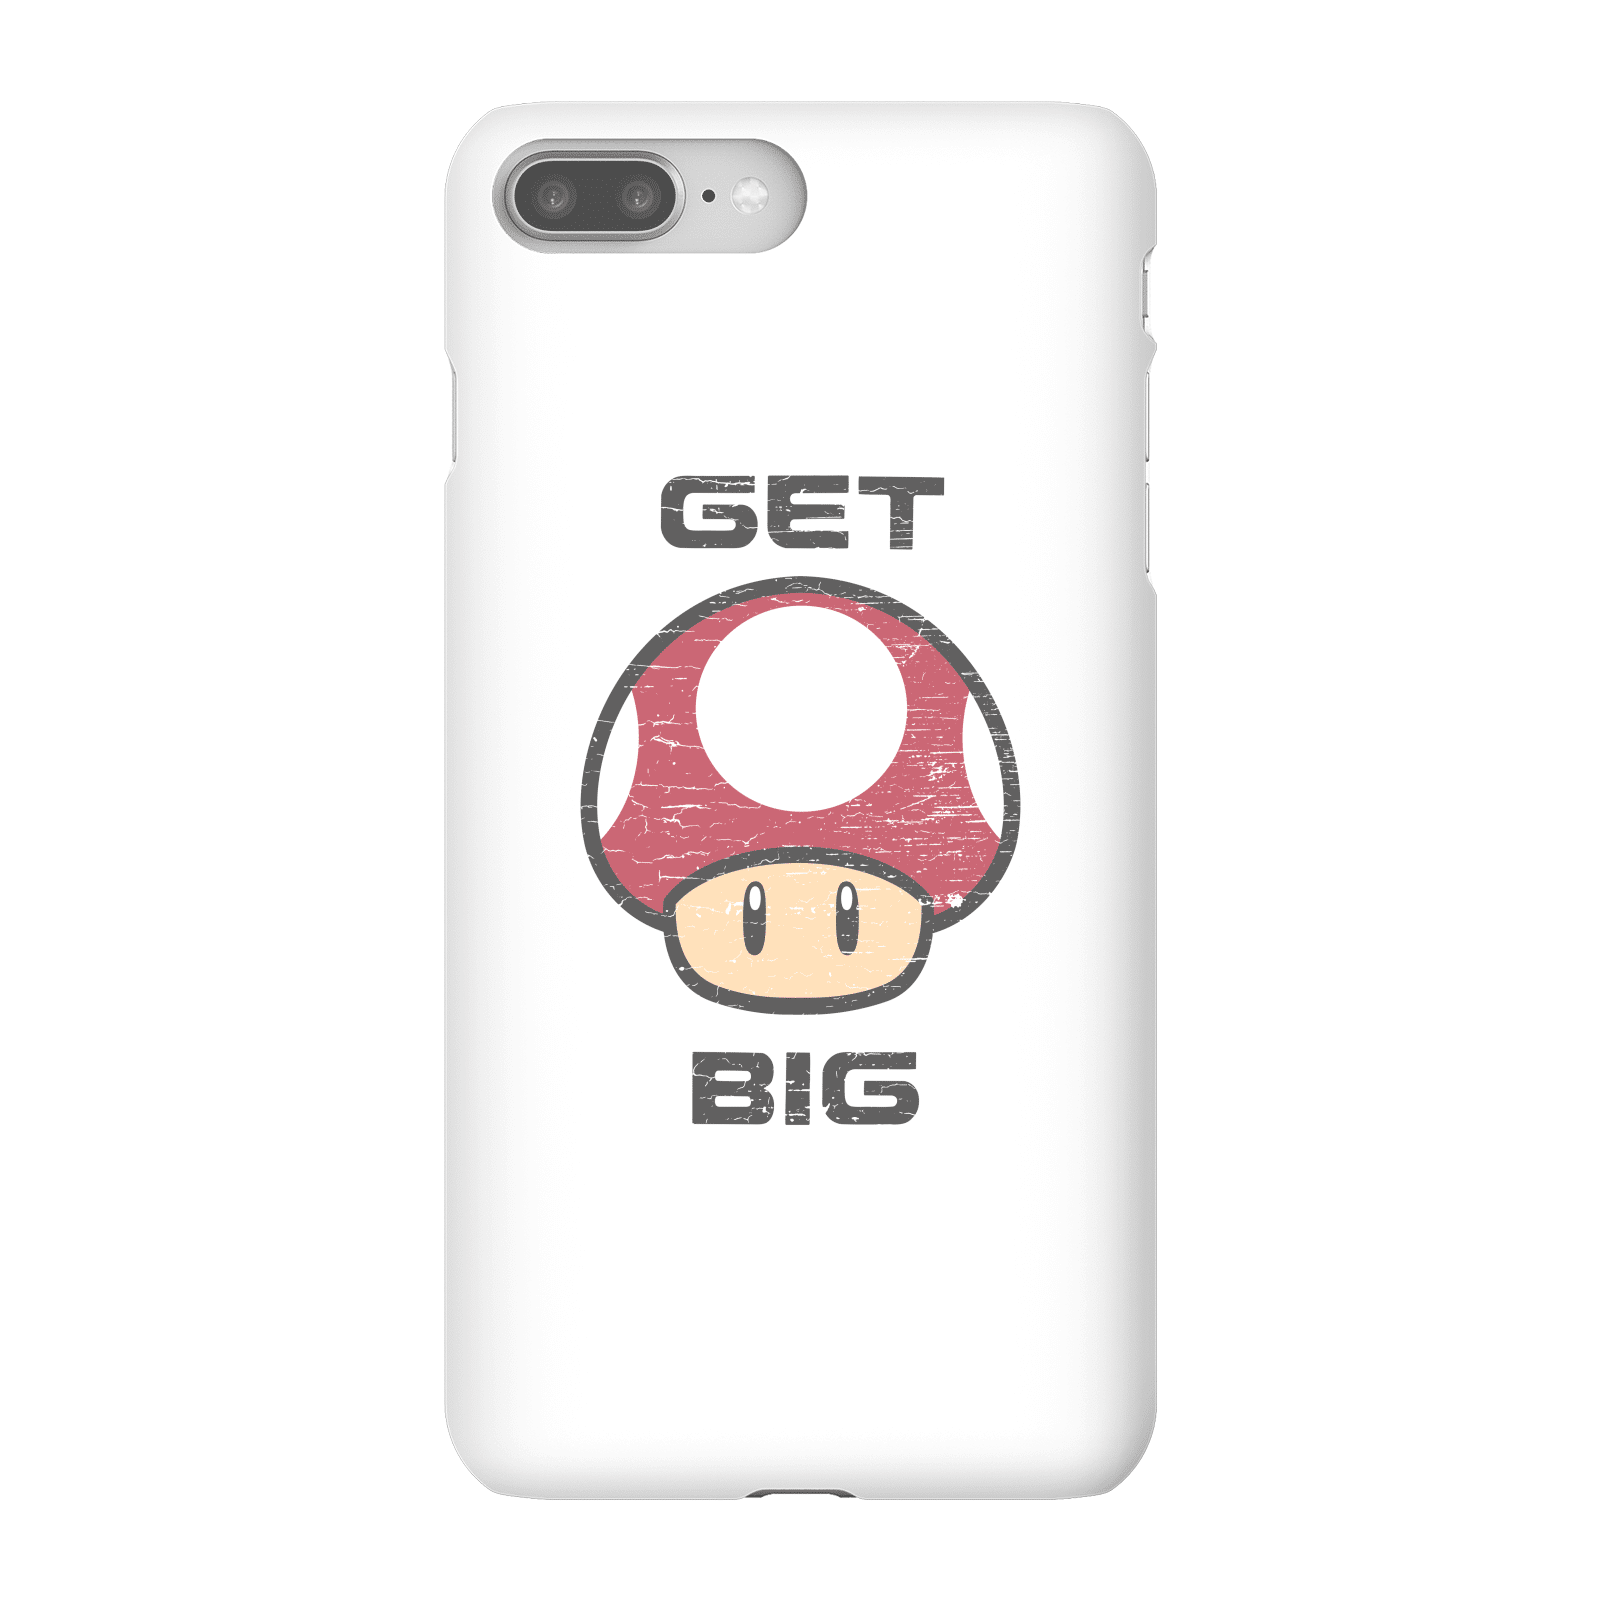 Nintendo Super Mario Get Big Mushroom Phone Case - iPhone 8 Plus - Snap Case - Matte